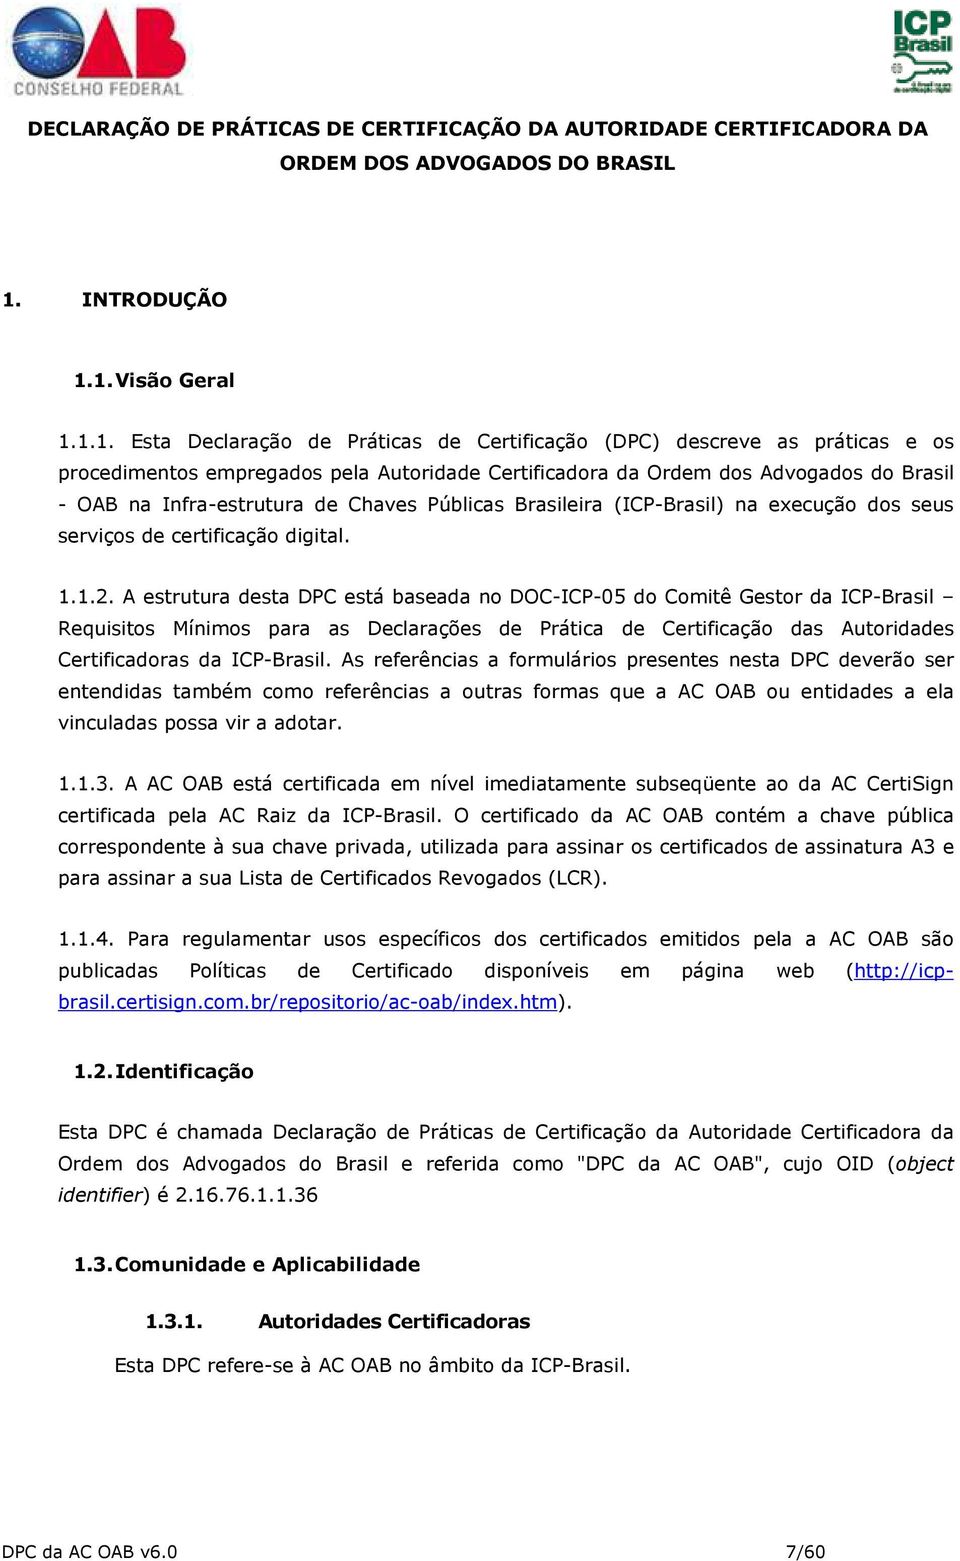 1. Visão Geral 1.1.1. Esta Declaração de Práticas de Certificação (DPC) descreve as práticas e os procedimentos empregados pela Autoridade Certificadora da Ordem dos Advogados do Brasil - OAB na